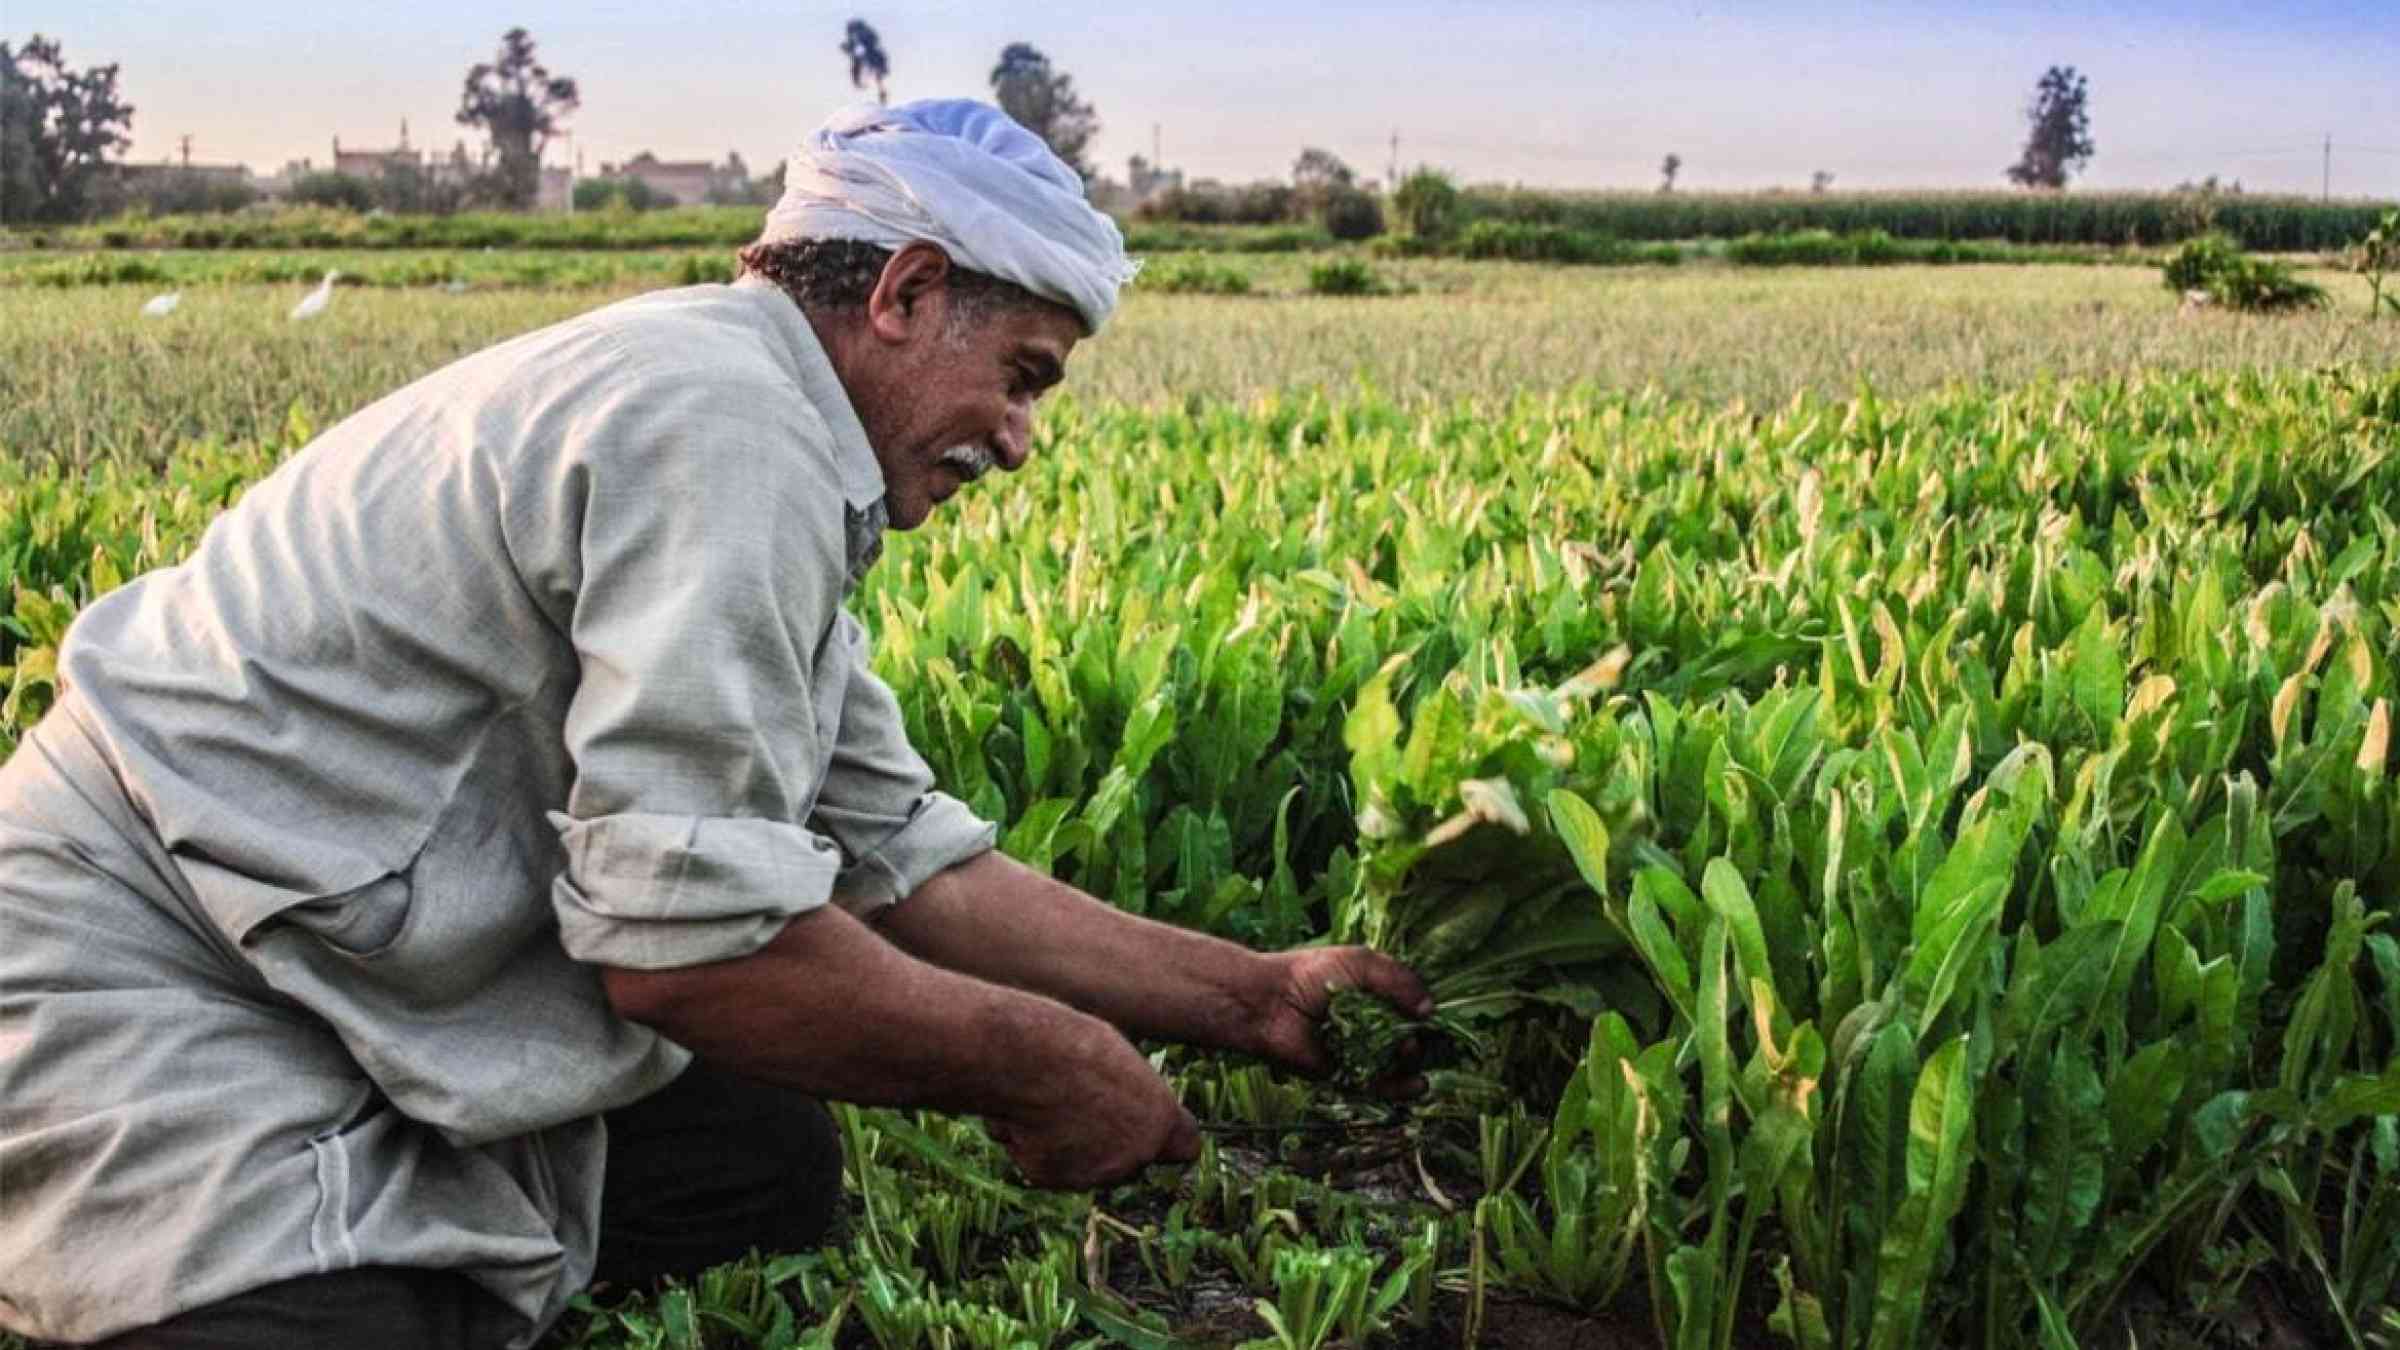 An Egyptian farmer harvests his crops in Dahreya, Dakahleya, Egypt